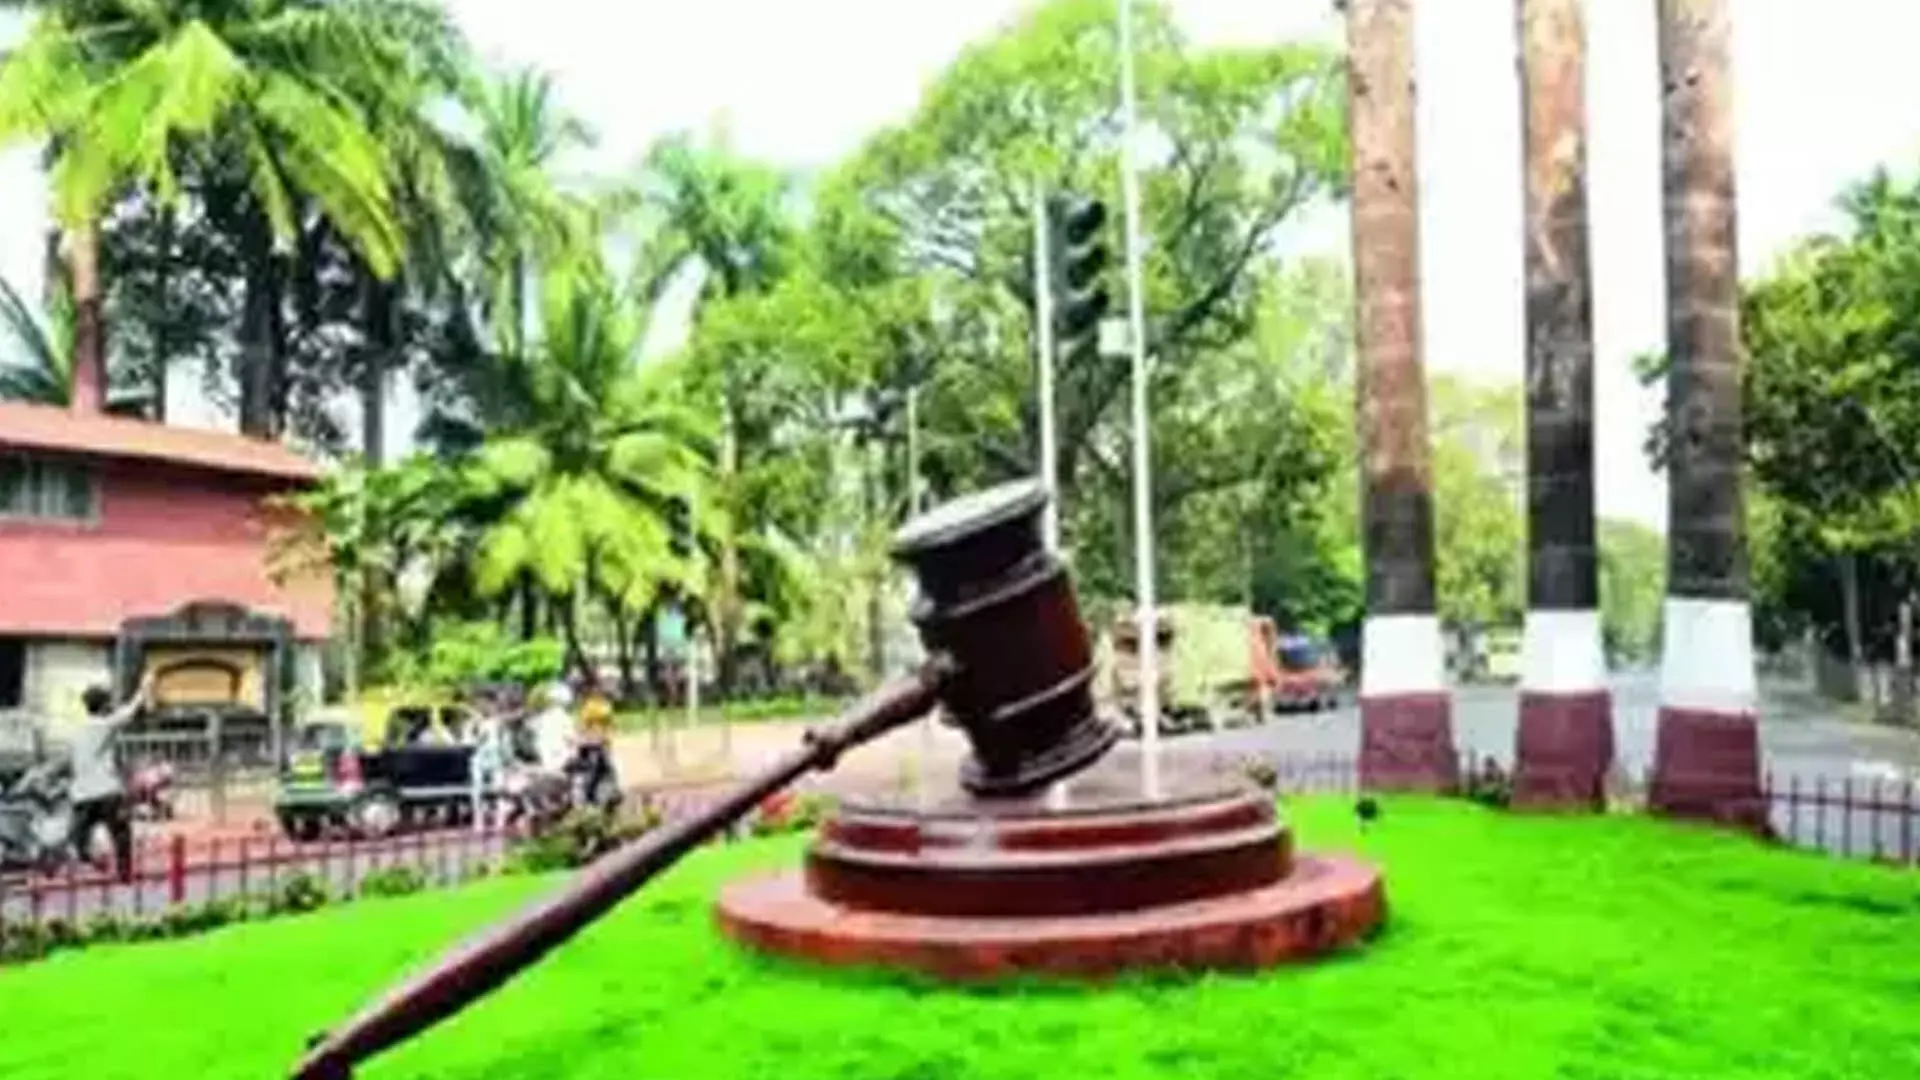 सीआरपीसी धारा 125 तहत ससुराल , गुजारा भत्ता नहीं कर्नाटक उच्च न्यायालय